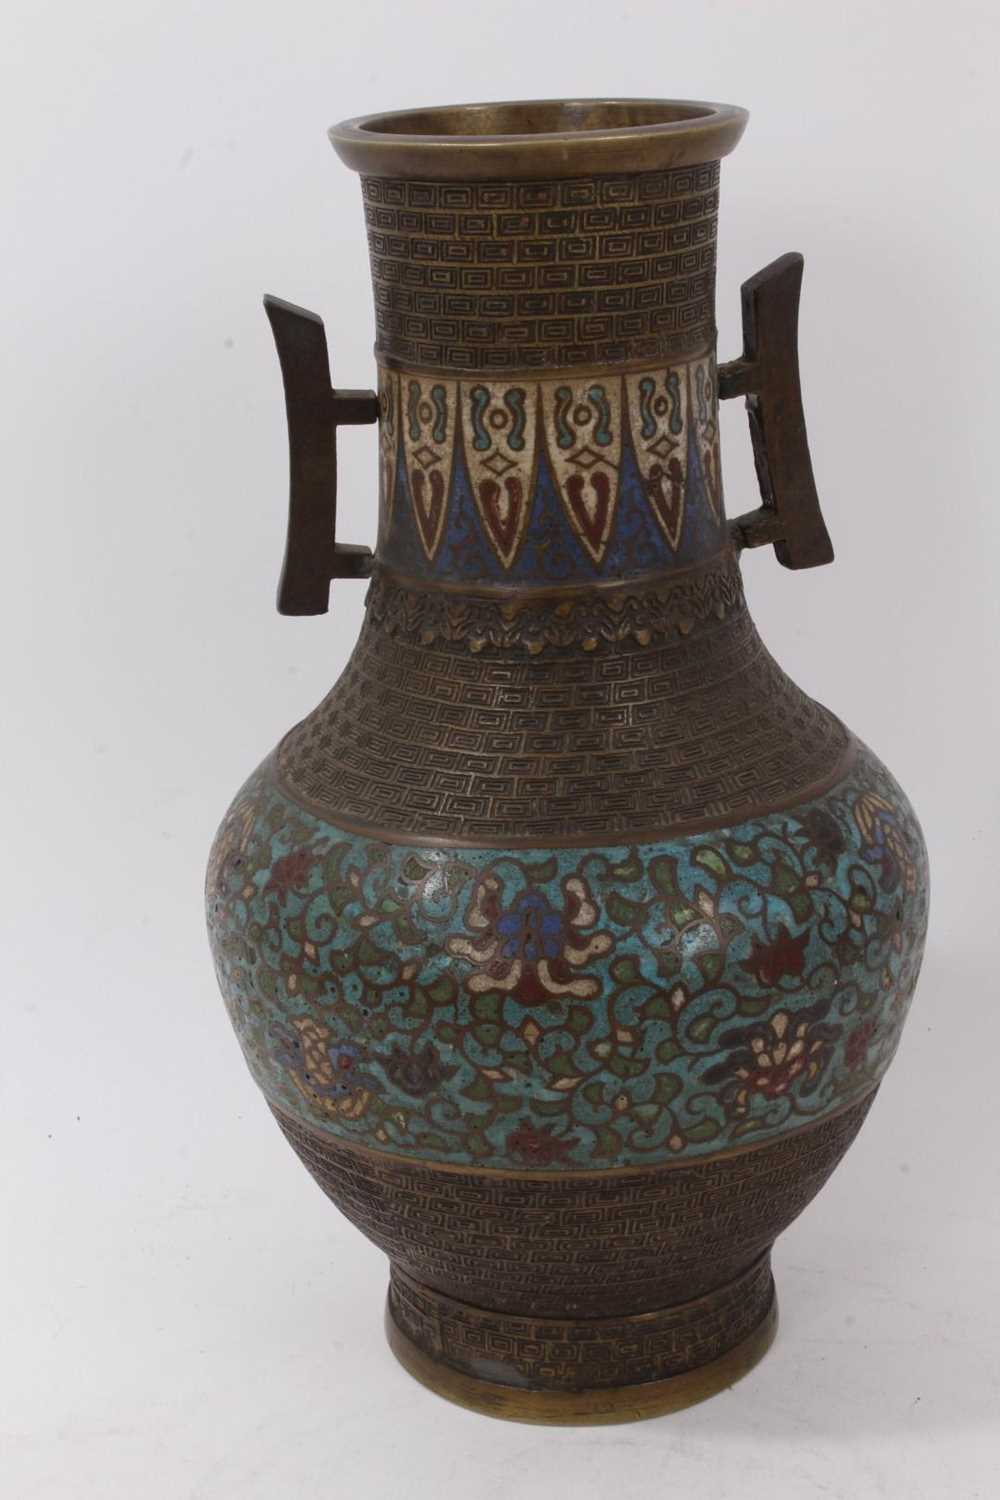 Antique Chinese cloisonné enamel bronze vase - Image 3 of 6